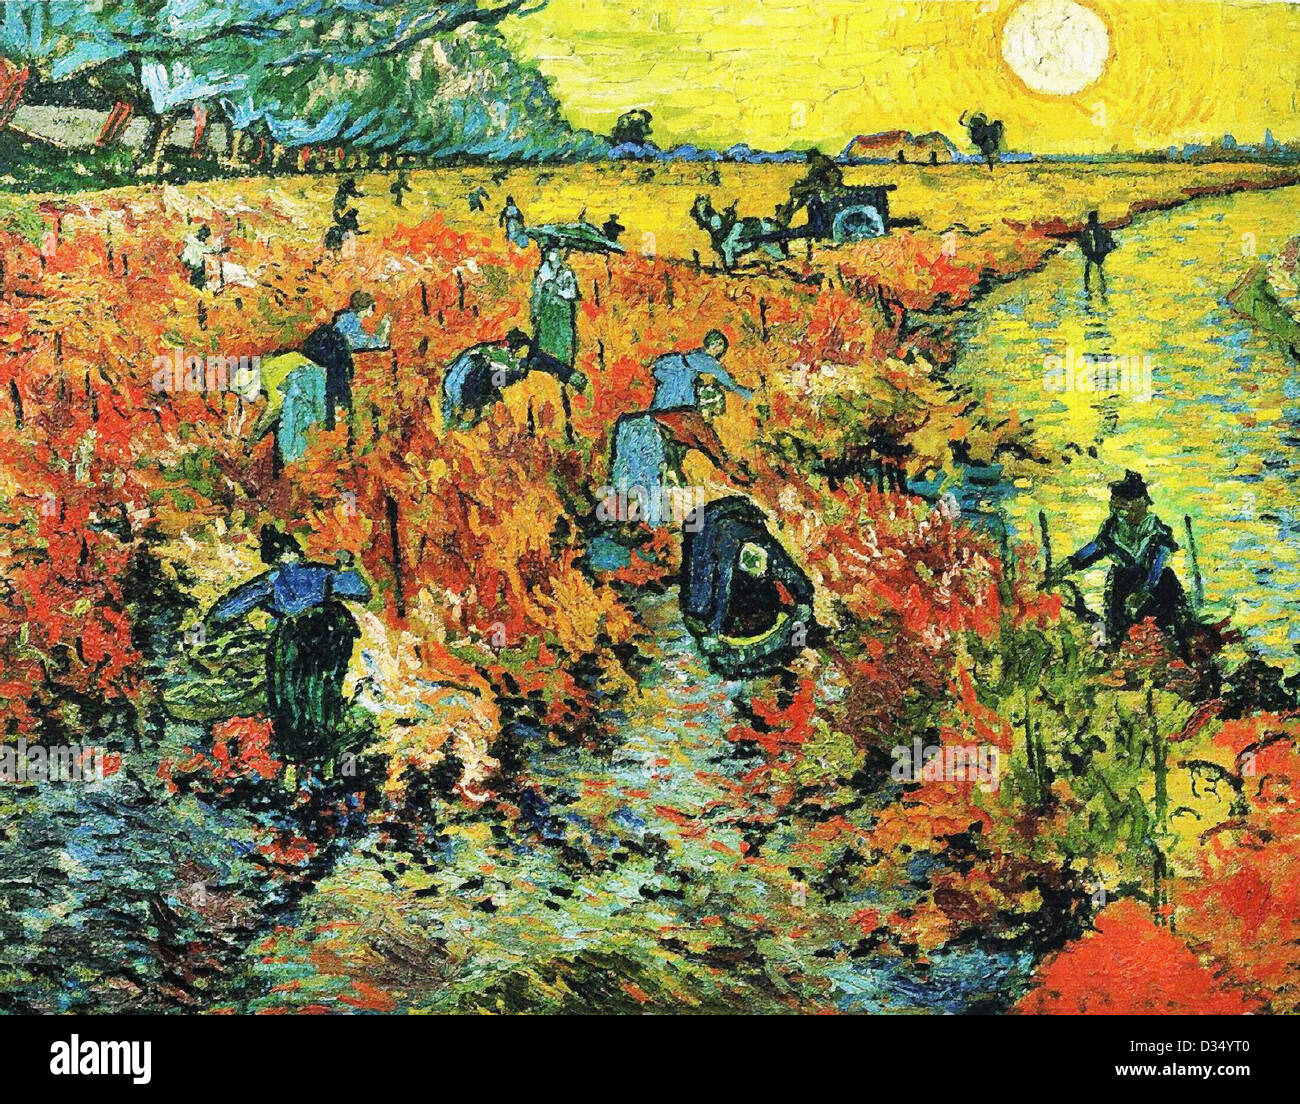 Vincent Van Gogh, roten Weinberge in Arles. 1888. Realismus. Öl auf Leinwand. Puschkin-Museum der schönen Künste, Moskau, Russland. Stockfoto